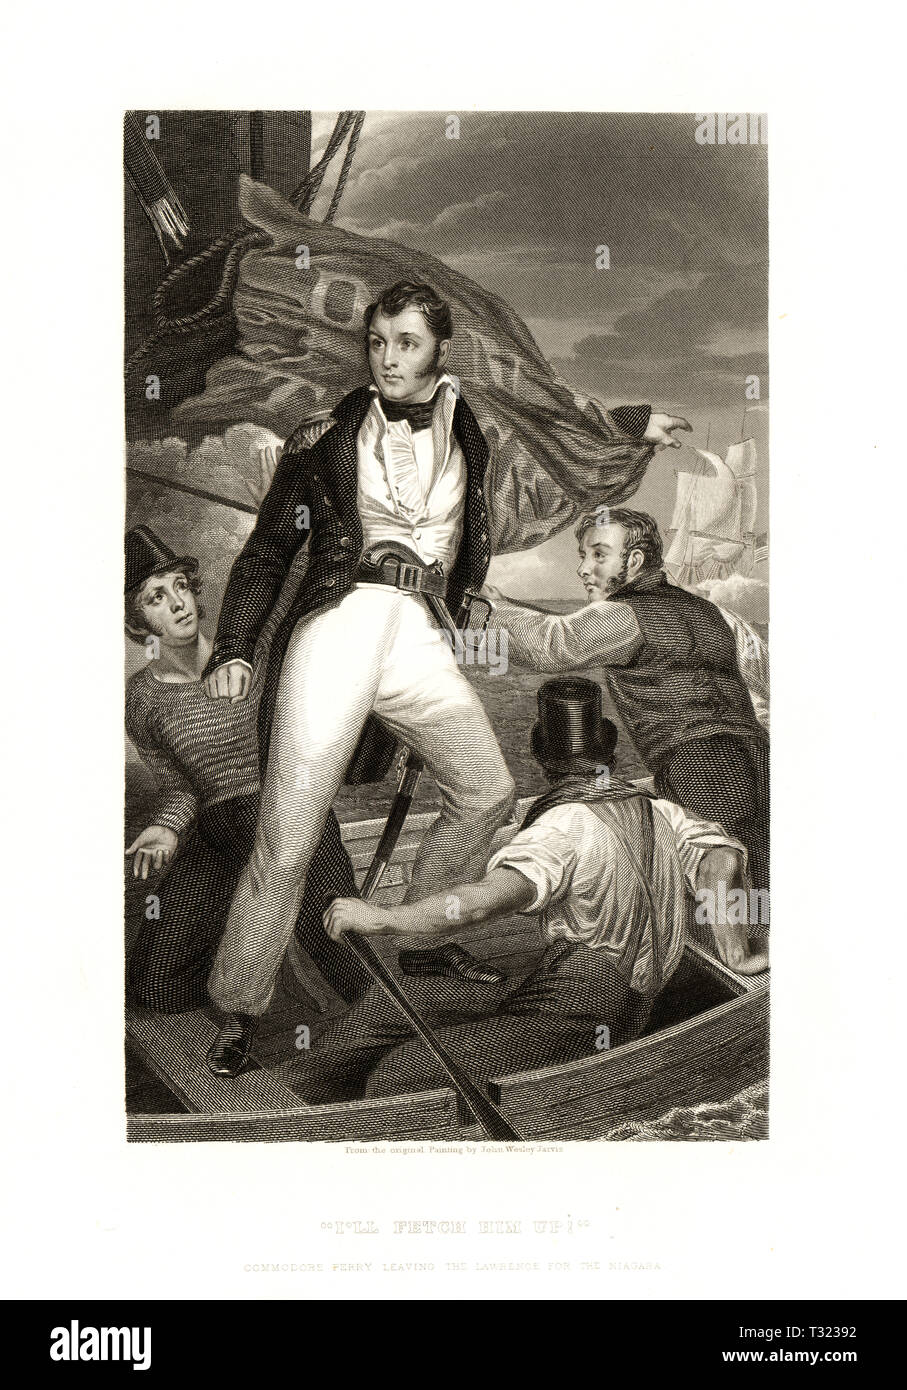 Amerikanische Geschichte Bild: Commodore Oliver Hazard Perry Aufgabe der Niagara für die Lawrence aus - Innen Bucht während der Schlacht auf dem Eriesee, Krieg von 1812 Stockfoto